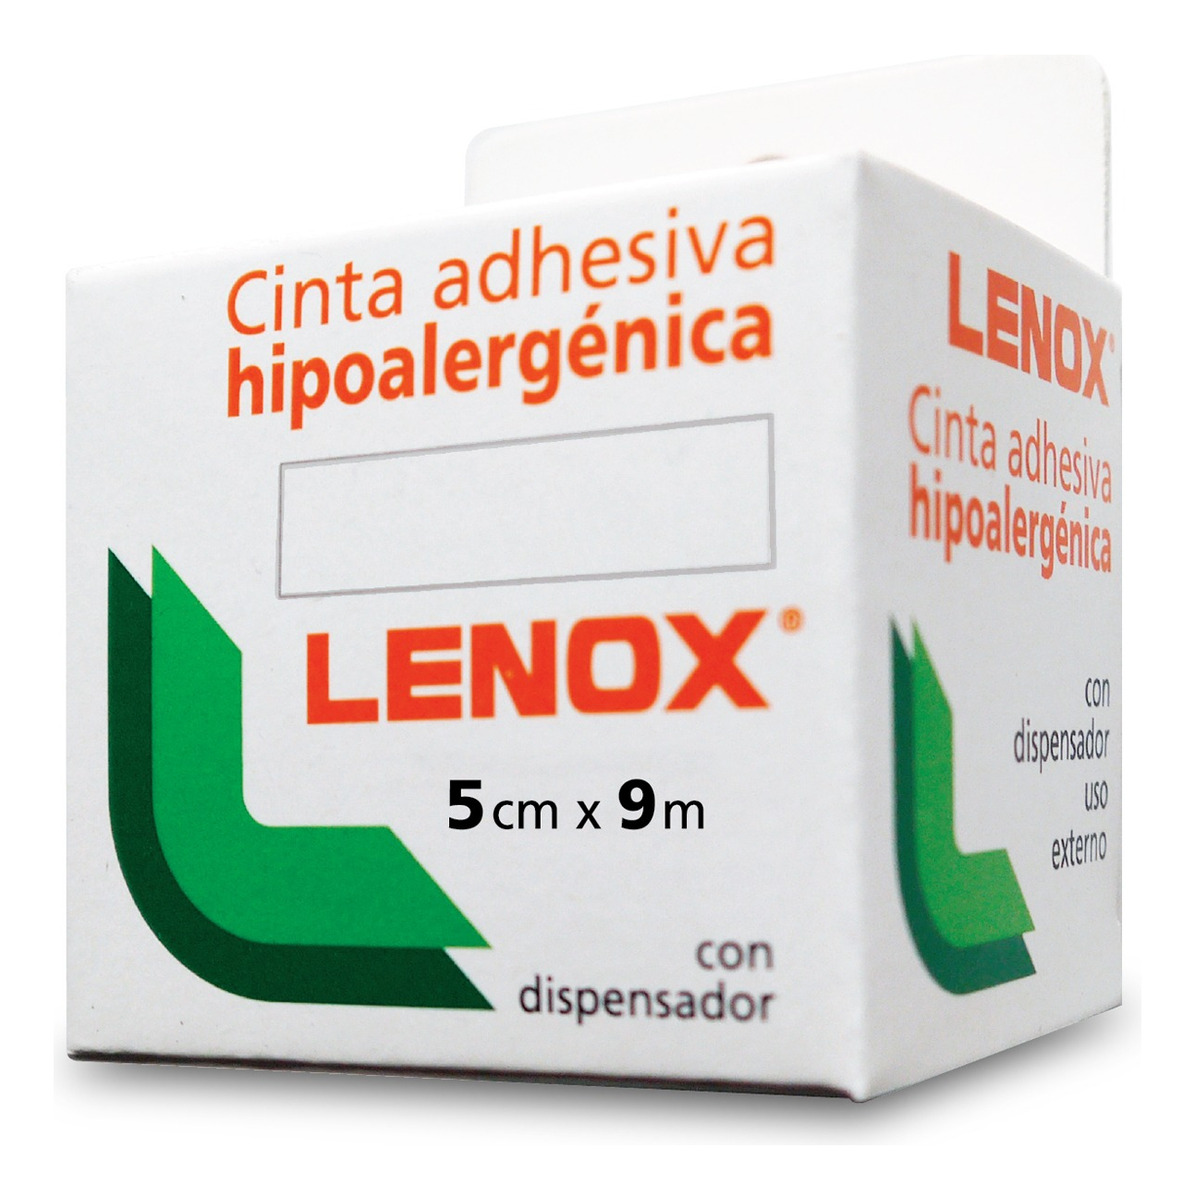 Cinta Adhesiva  Hipoalergenica 5 Cm X 9 Mts C/dispenser